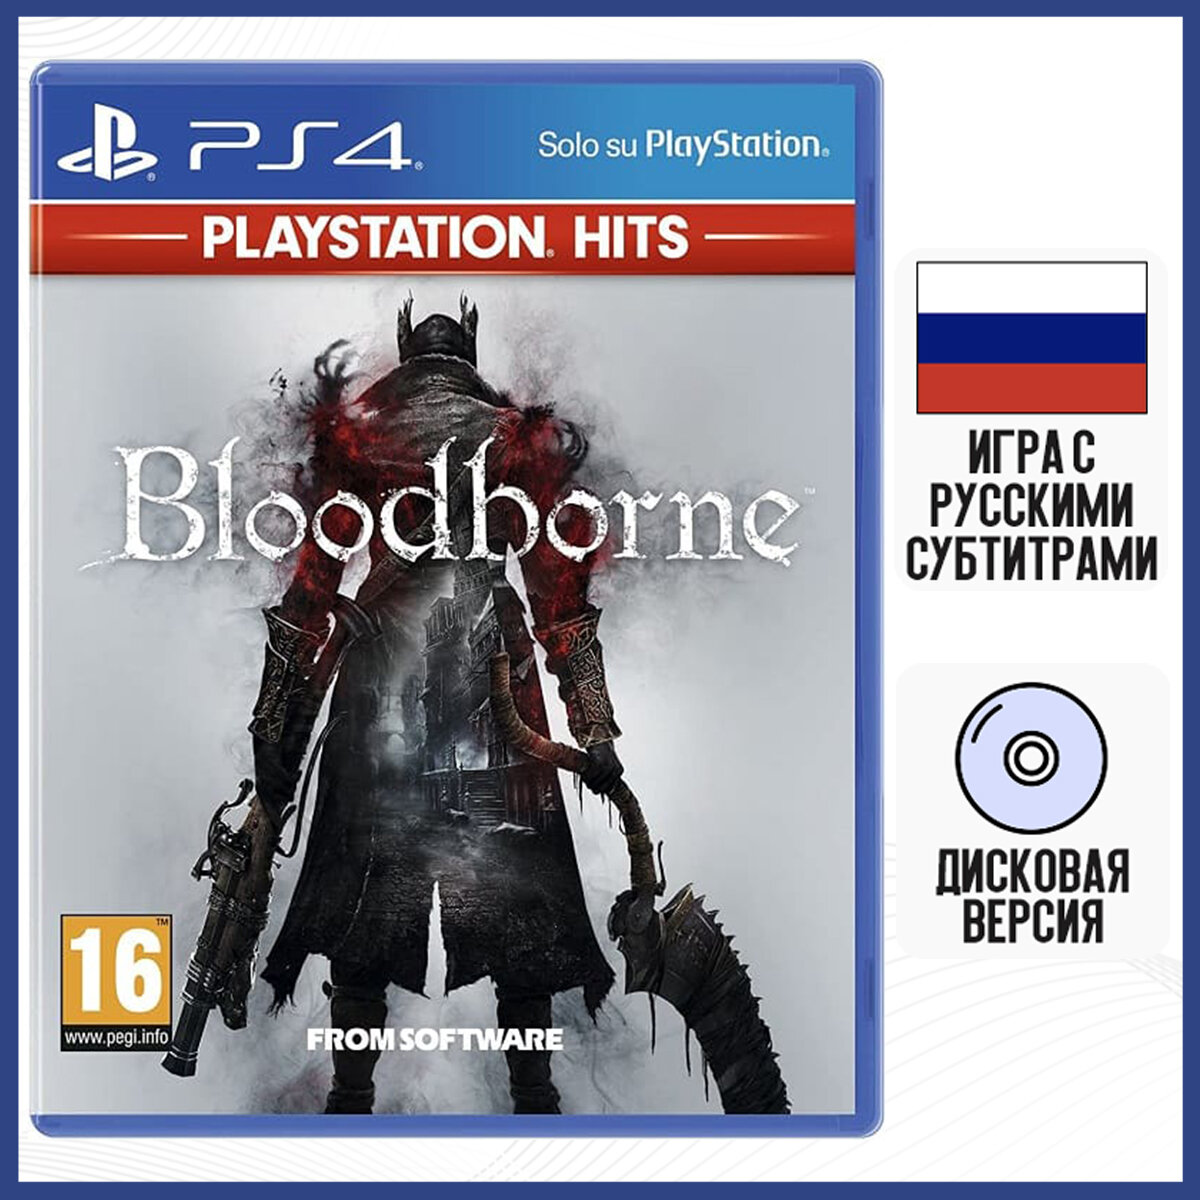 Игра Bloodborne - Playstation Hits (PS4, русские субтитры)